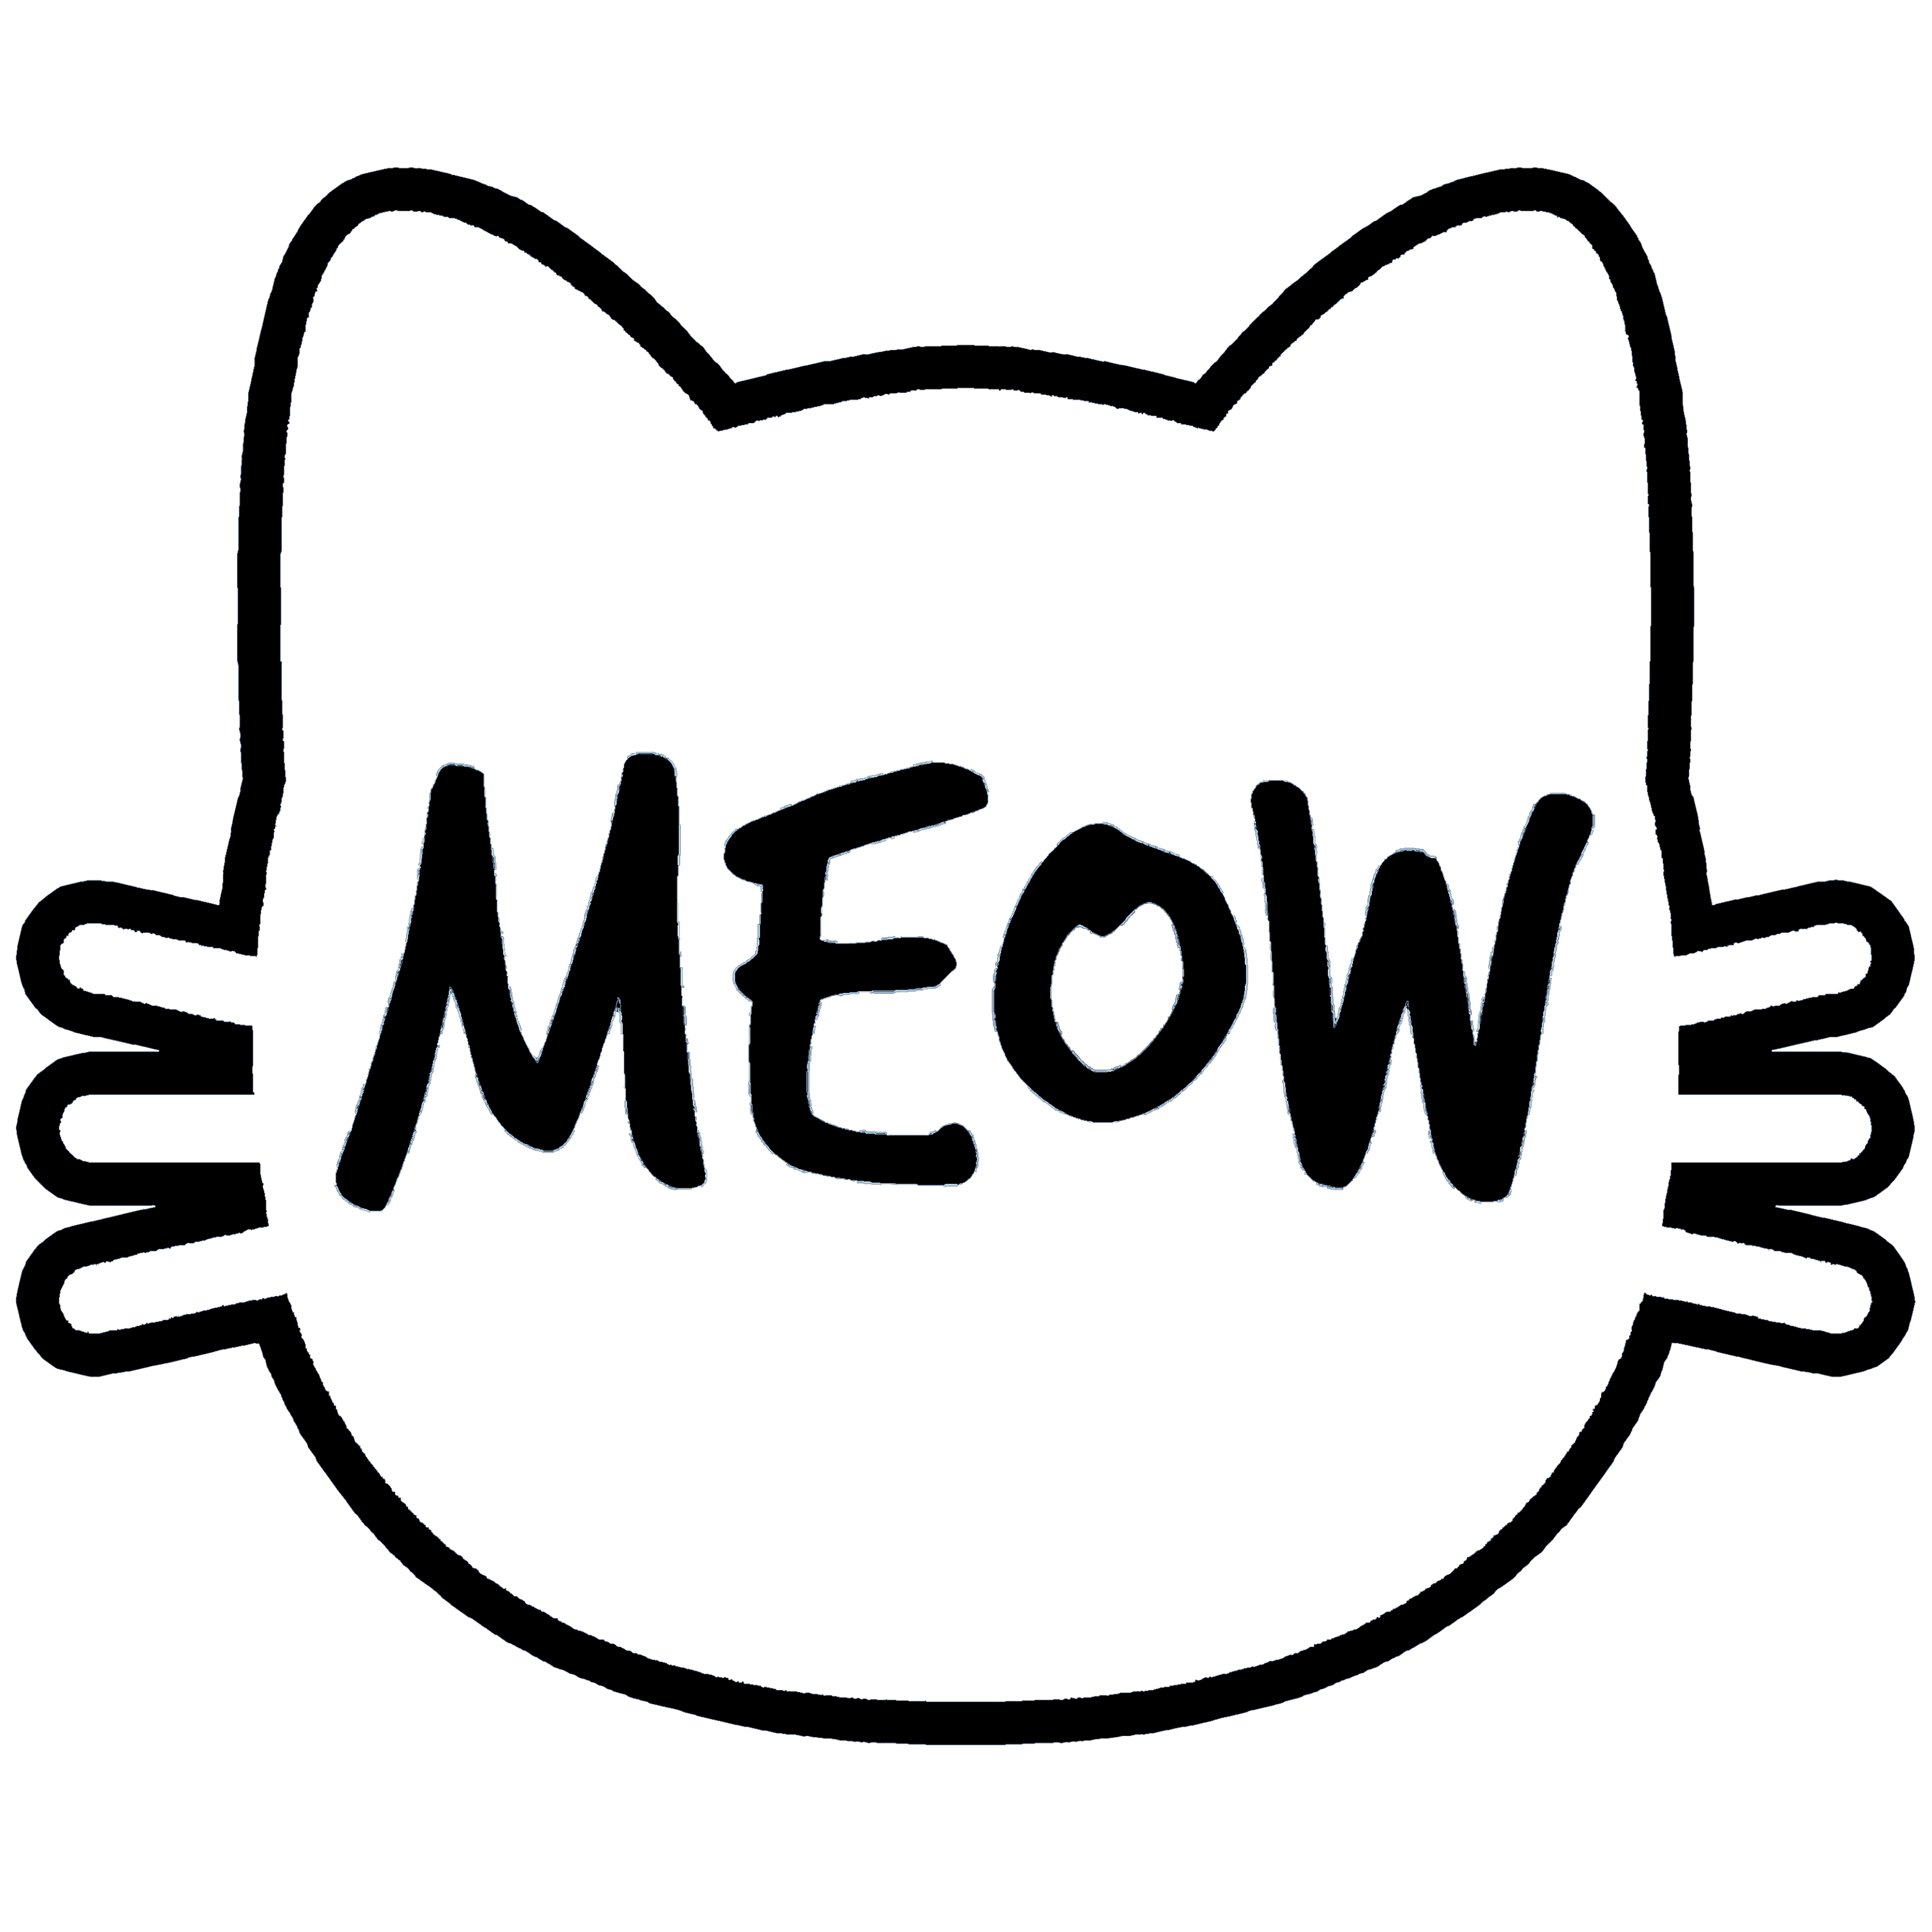 Meow.com